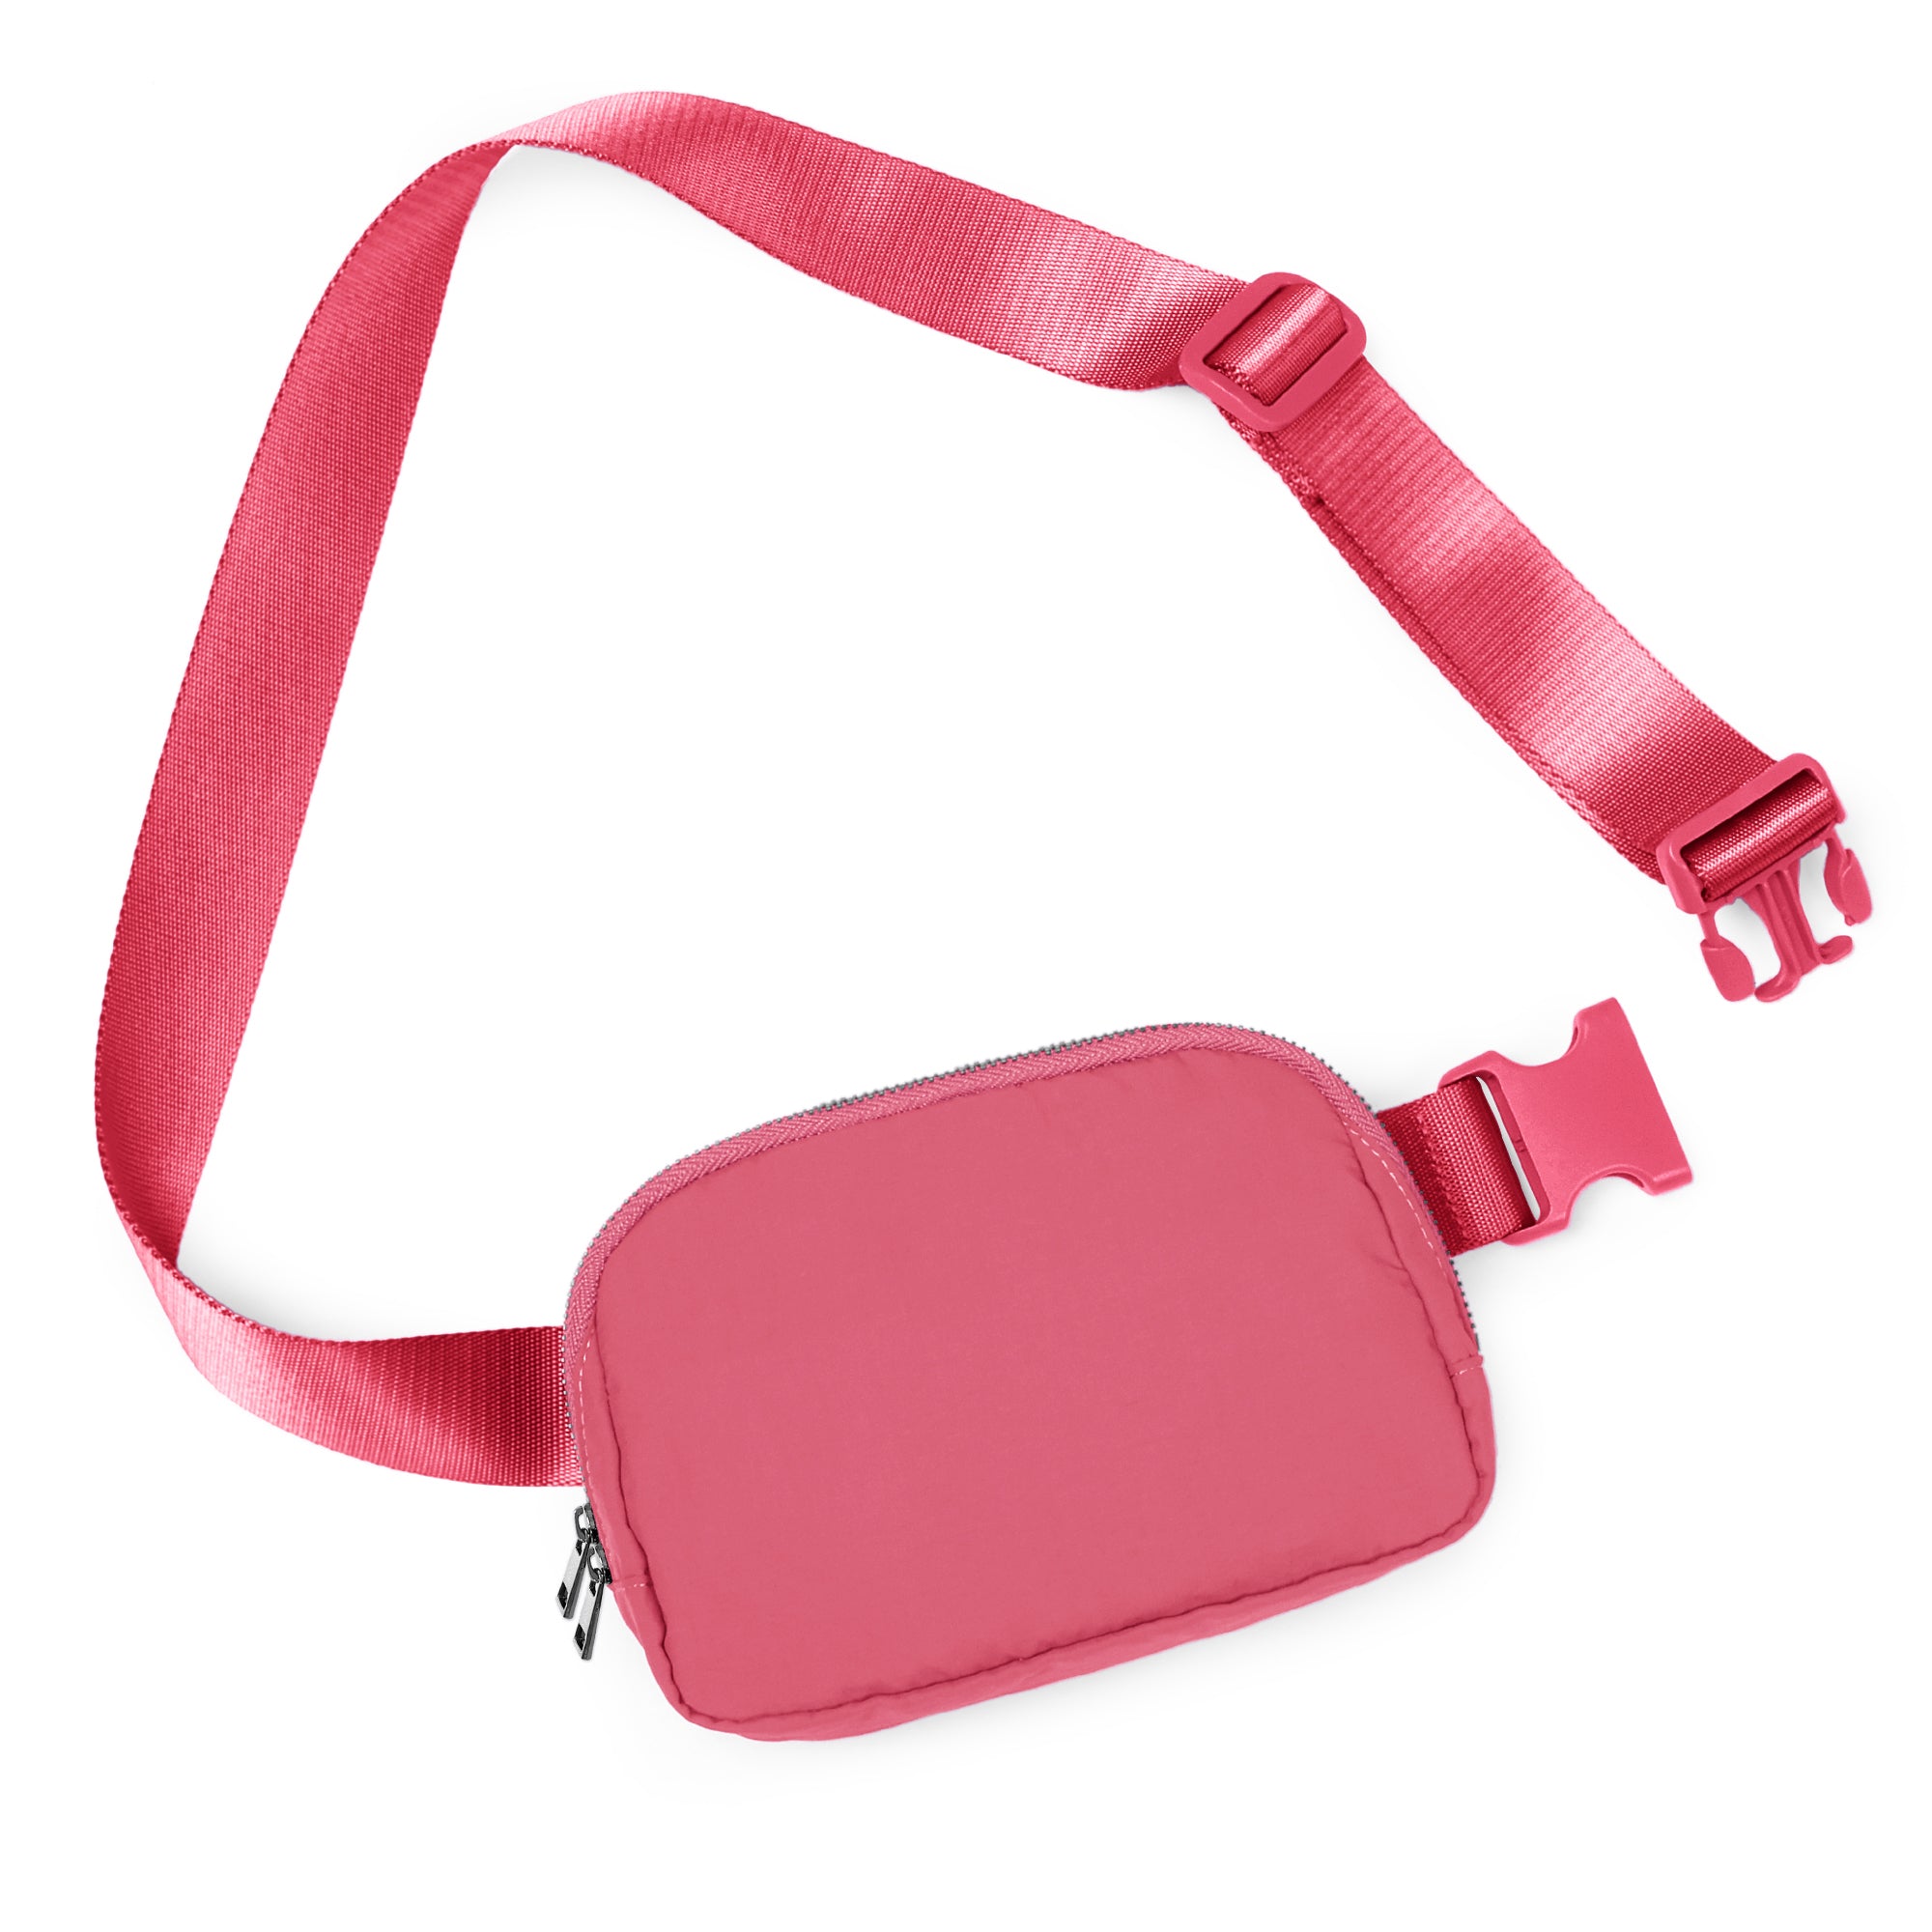 Unisex Two-Way Zip Mini Belt Bag Raspberry 8" x 2" x 5.5" - ododos